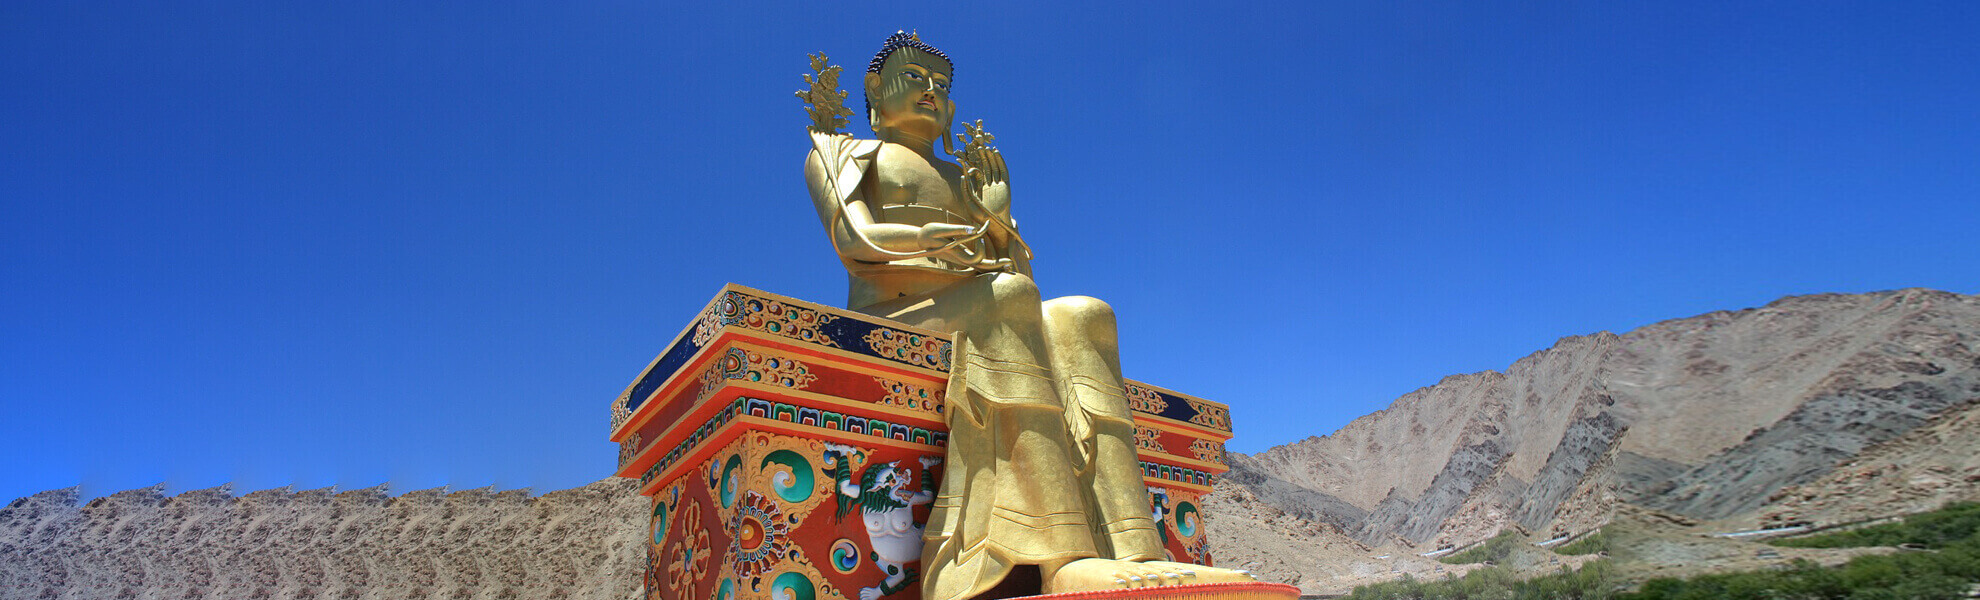 Offgrid Ladakh Tour